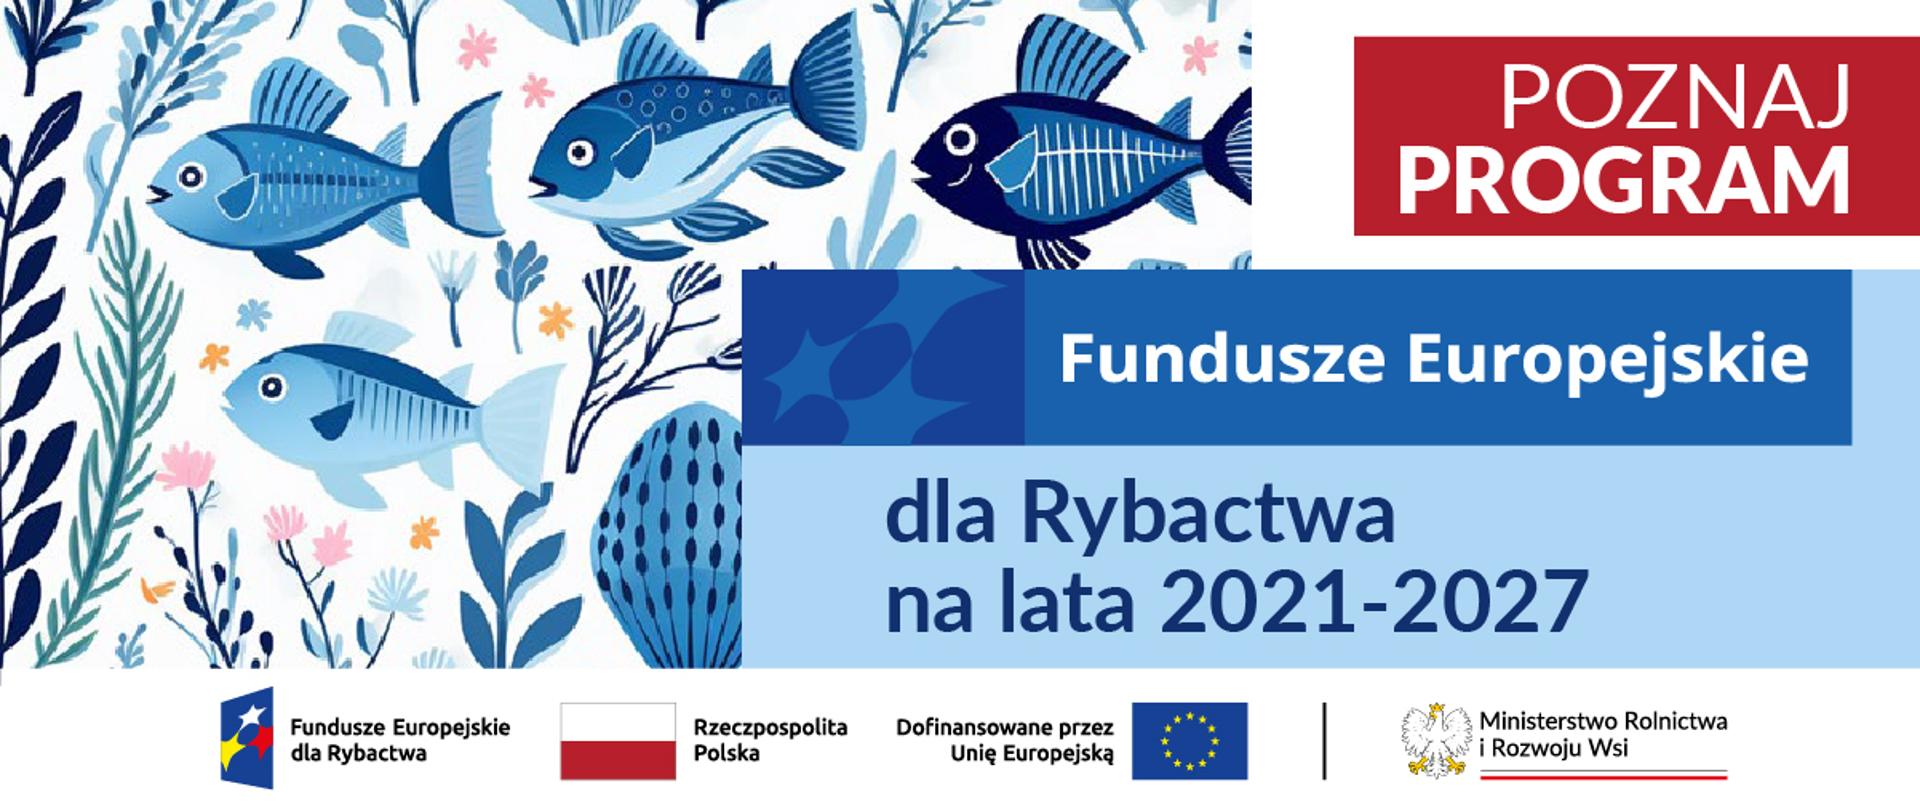 Poznaj program Fundusze Europejskie dla Rybactwa na lata 2021-2017